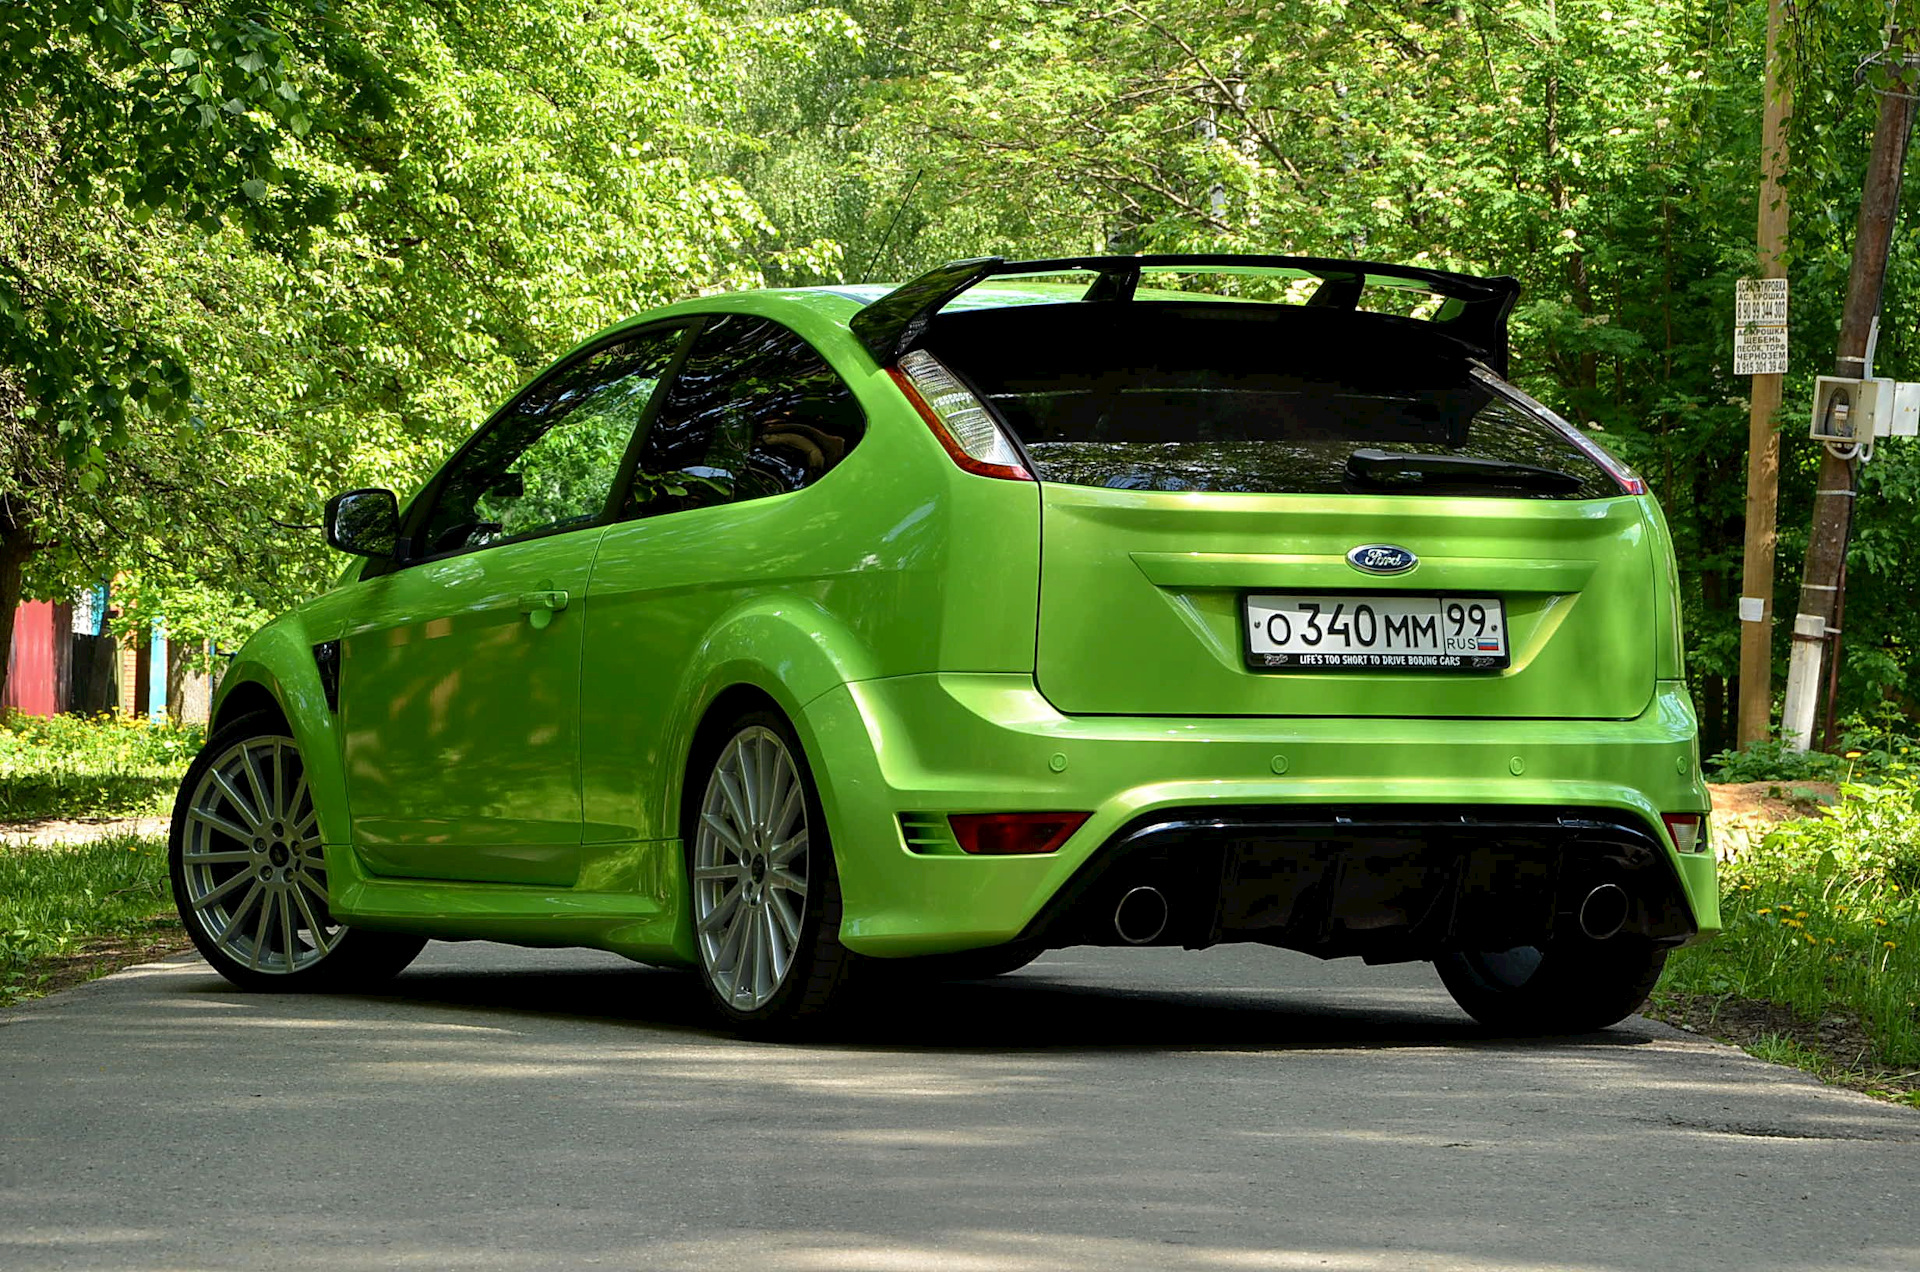 Зеленый хэтчбек. Focus 2 RS. Форд фокус 2 РС. Ford Focus RS 2010. Форд фокус 2 хэтчбек зеленый.